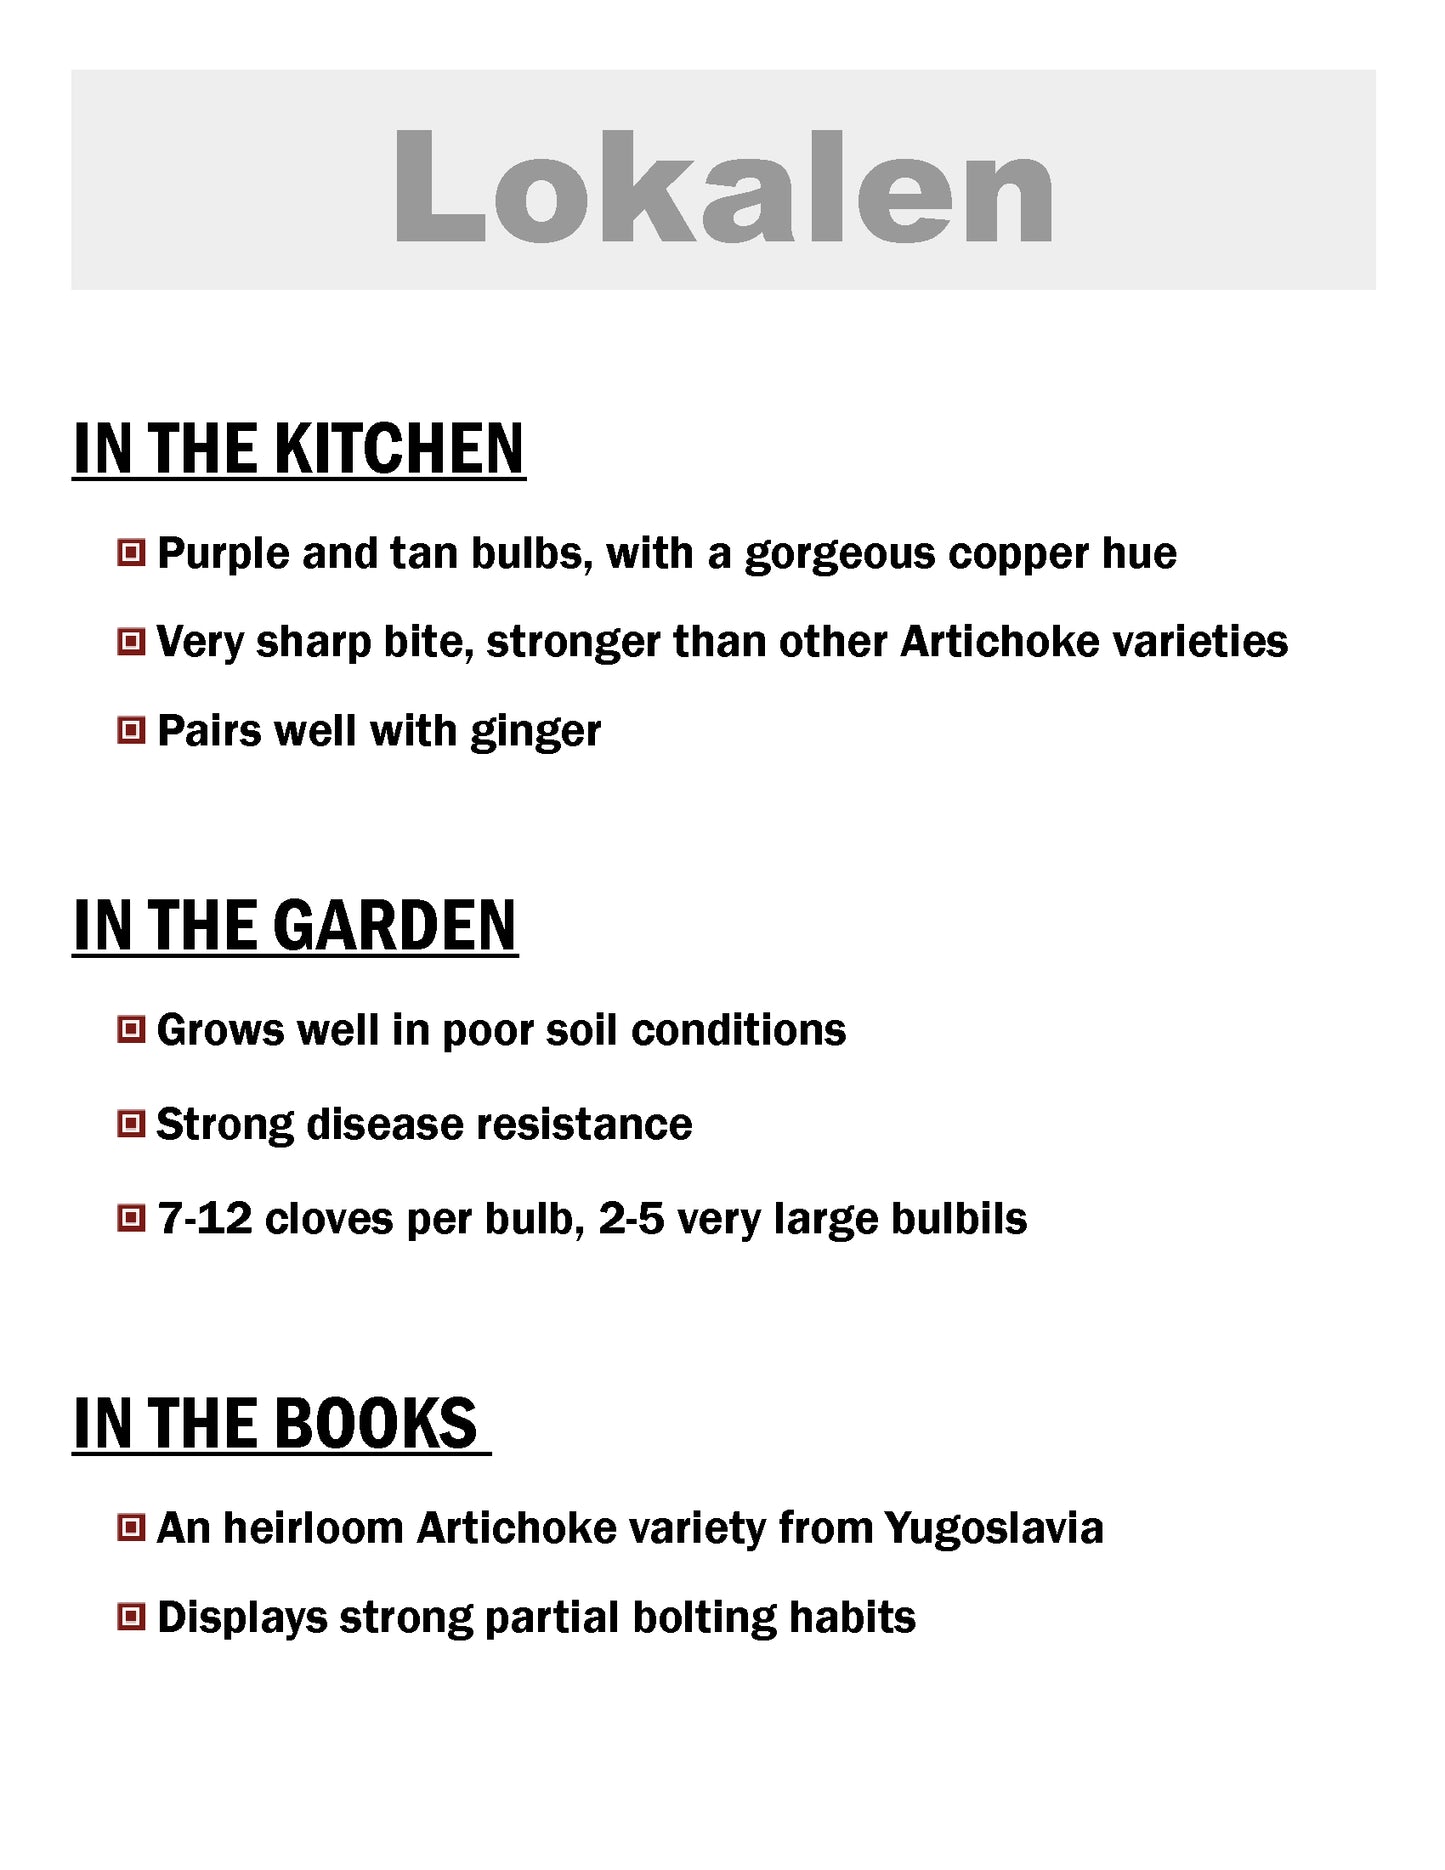 Lokalen, Artichoke, Softneck garlic description card by Garlicloves